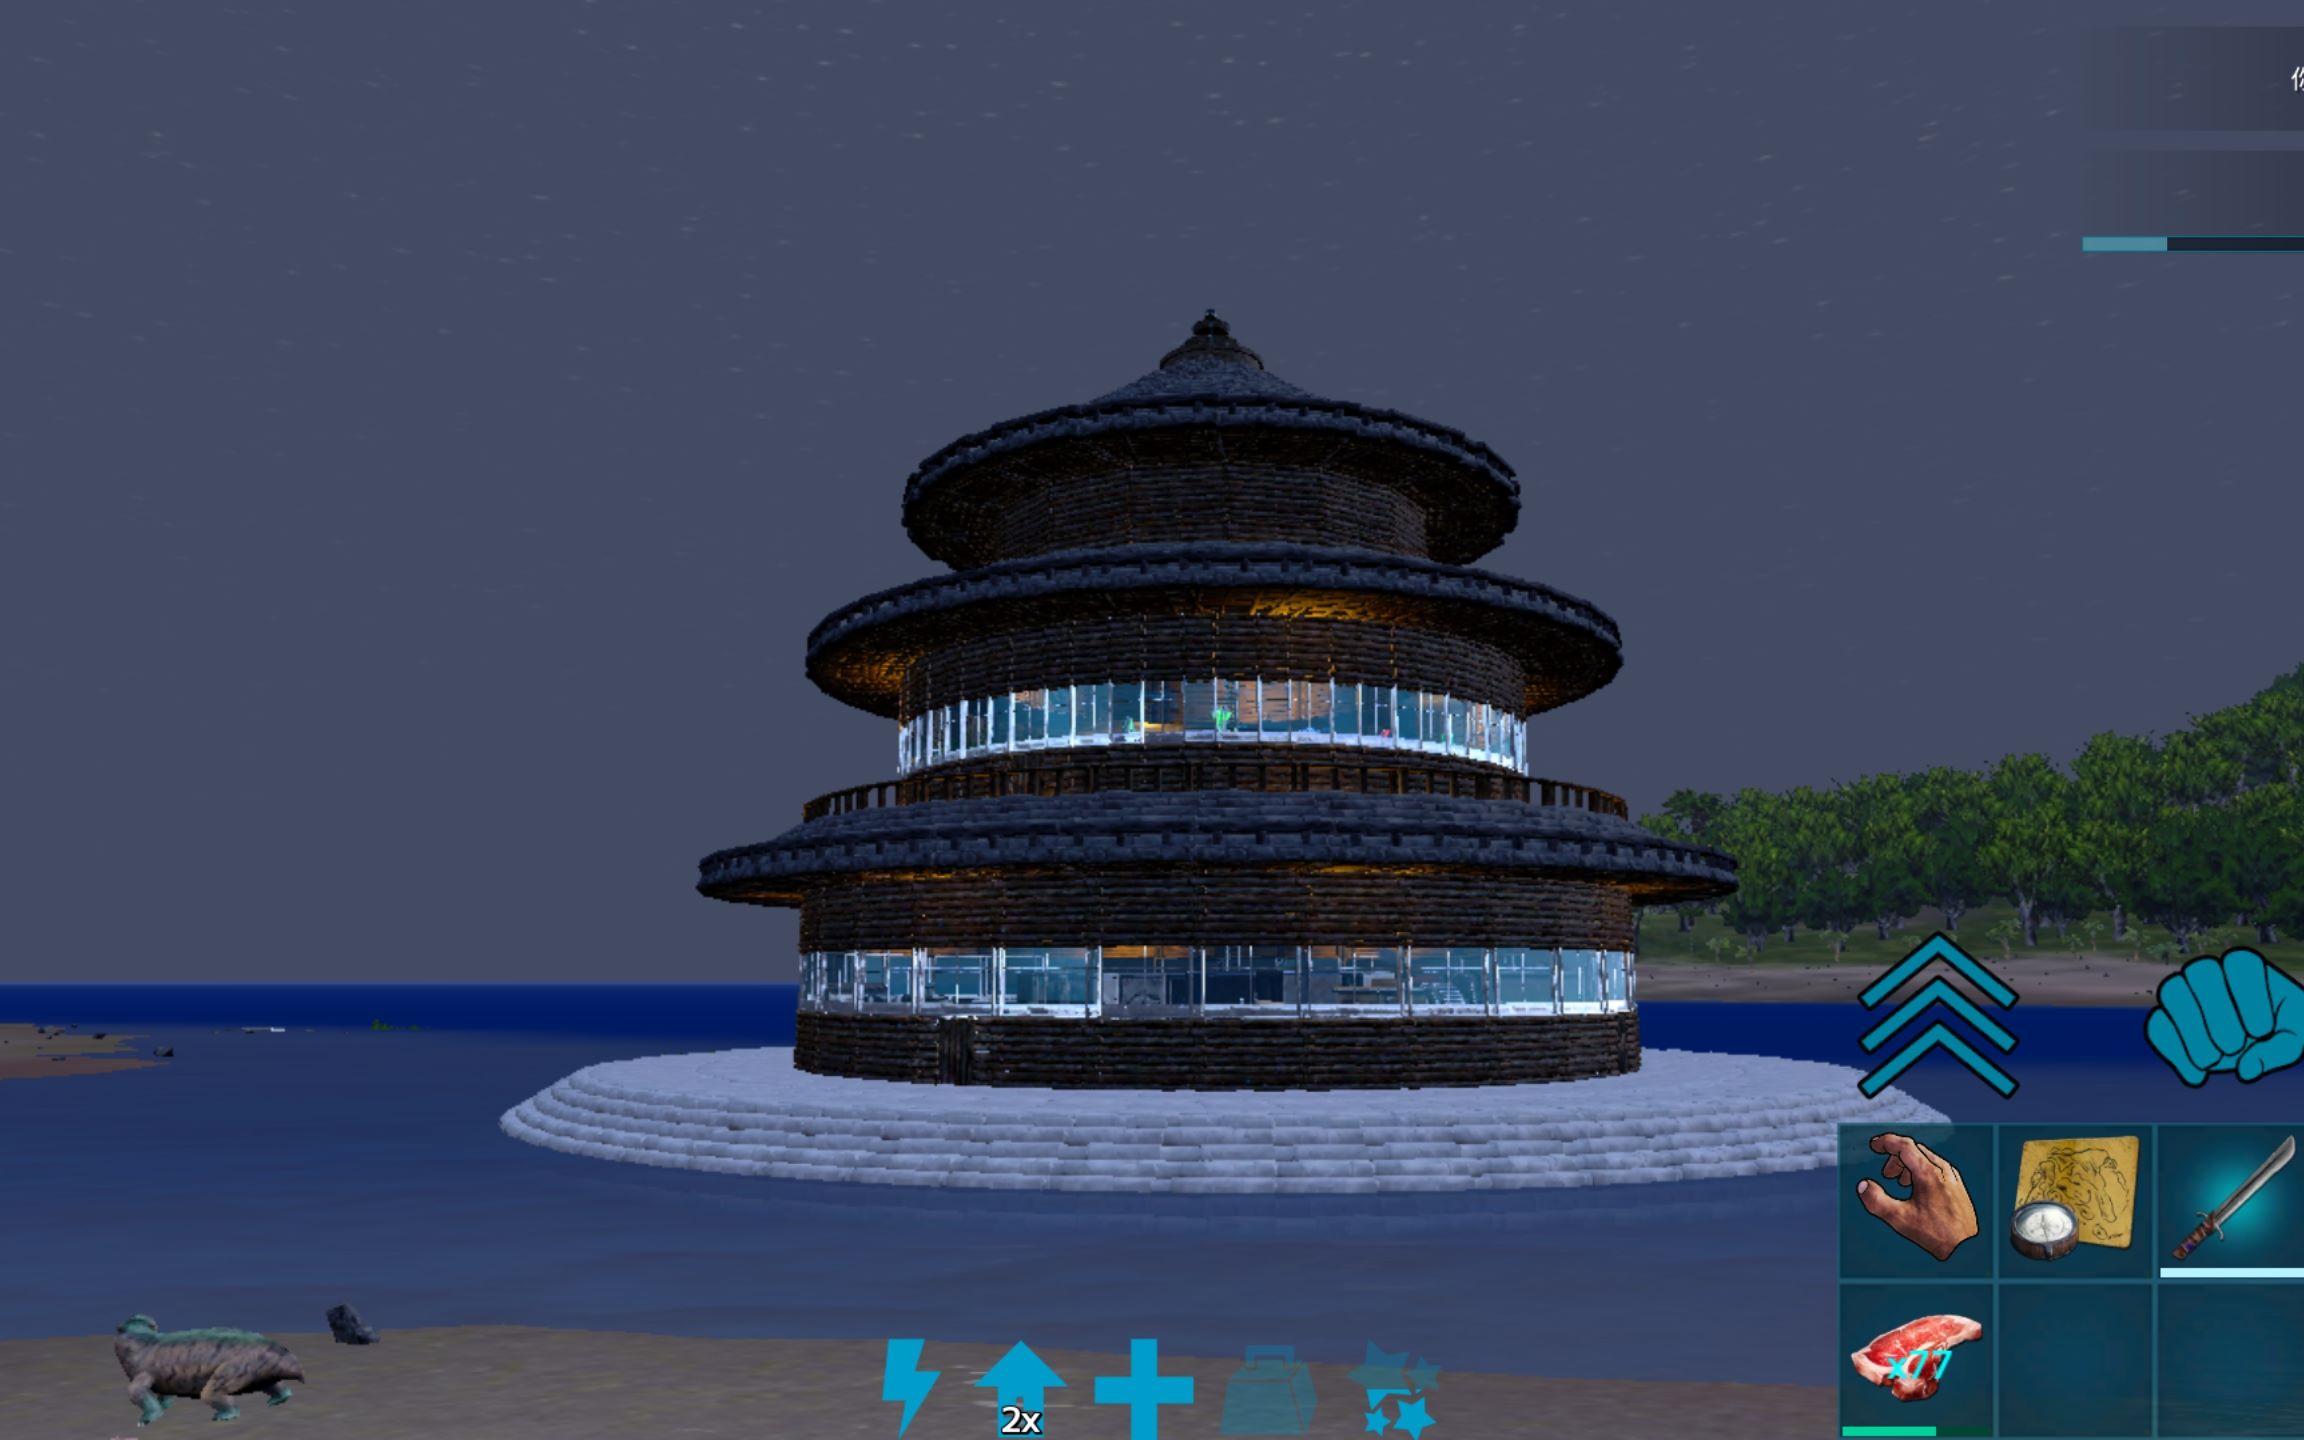 方舟手游玲珑塔圆形塔状建筑设计参考